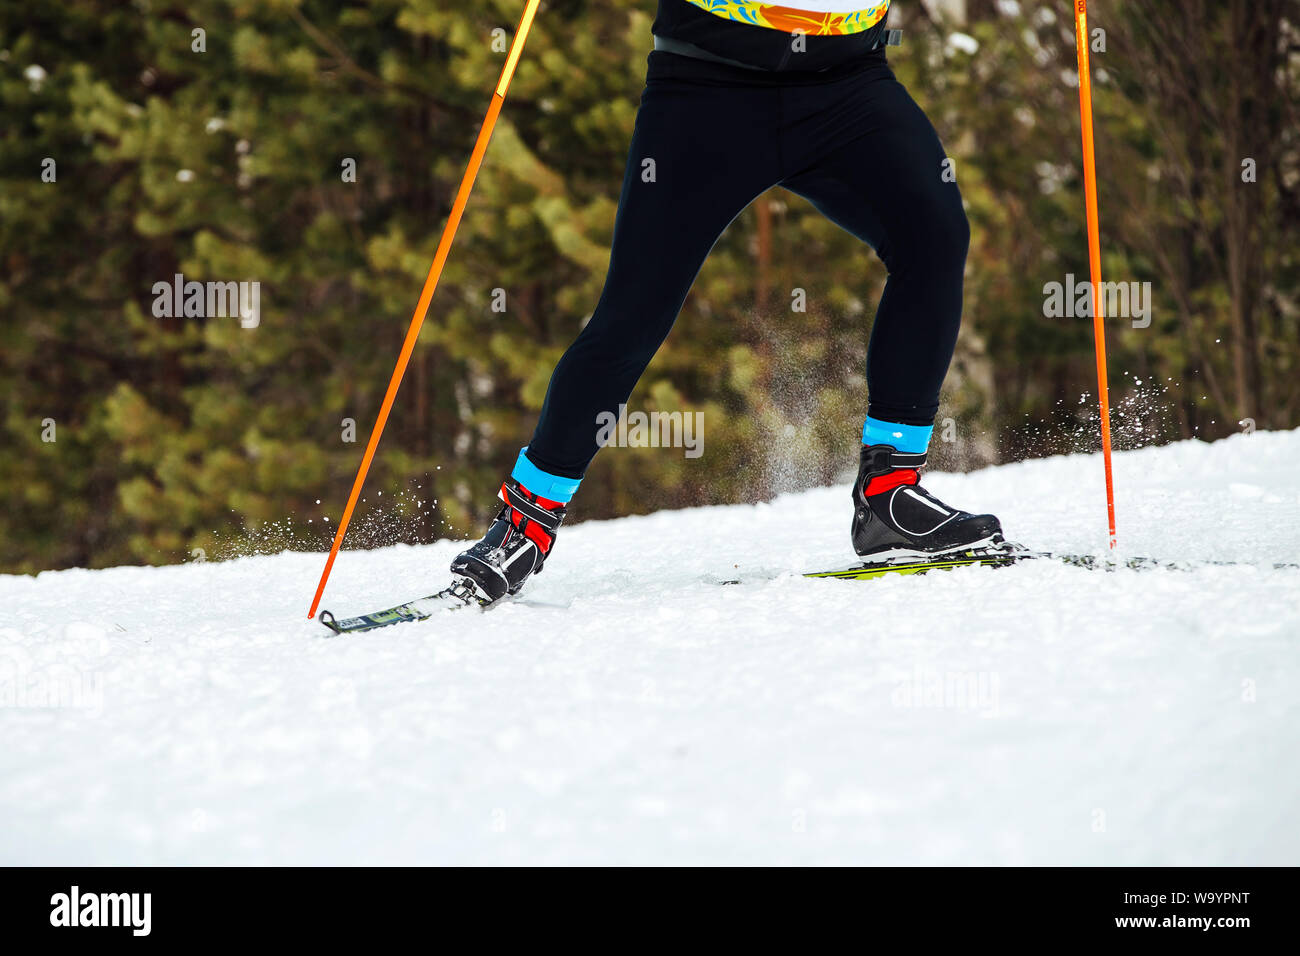 athlete skier riding skate skiing competition winter marathon Stock Photo